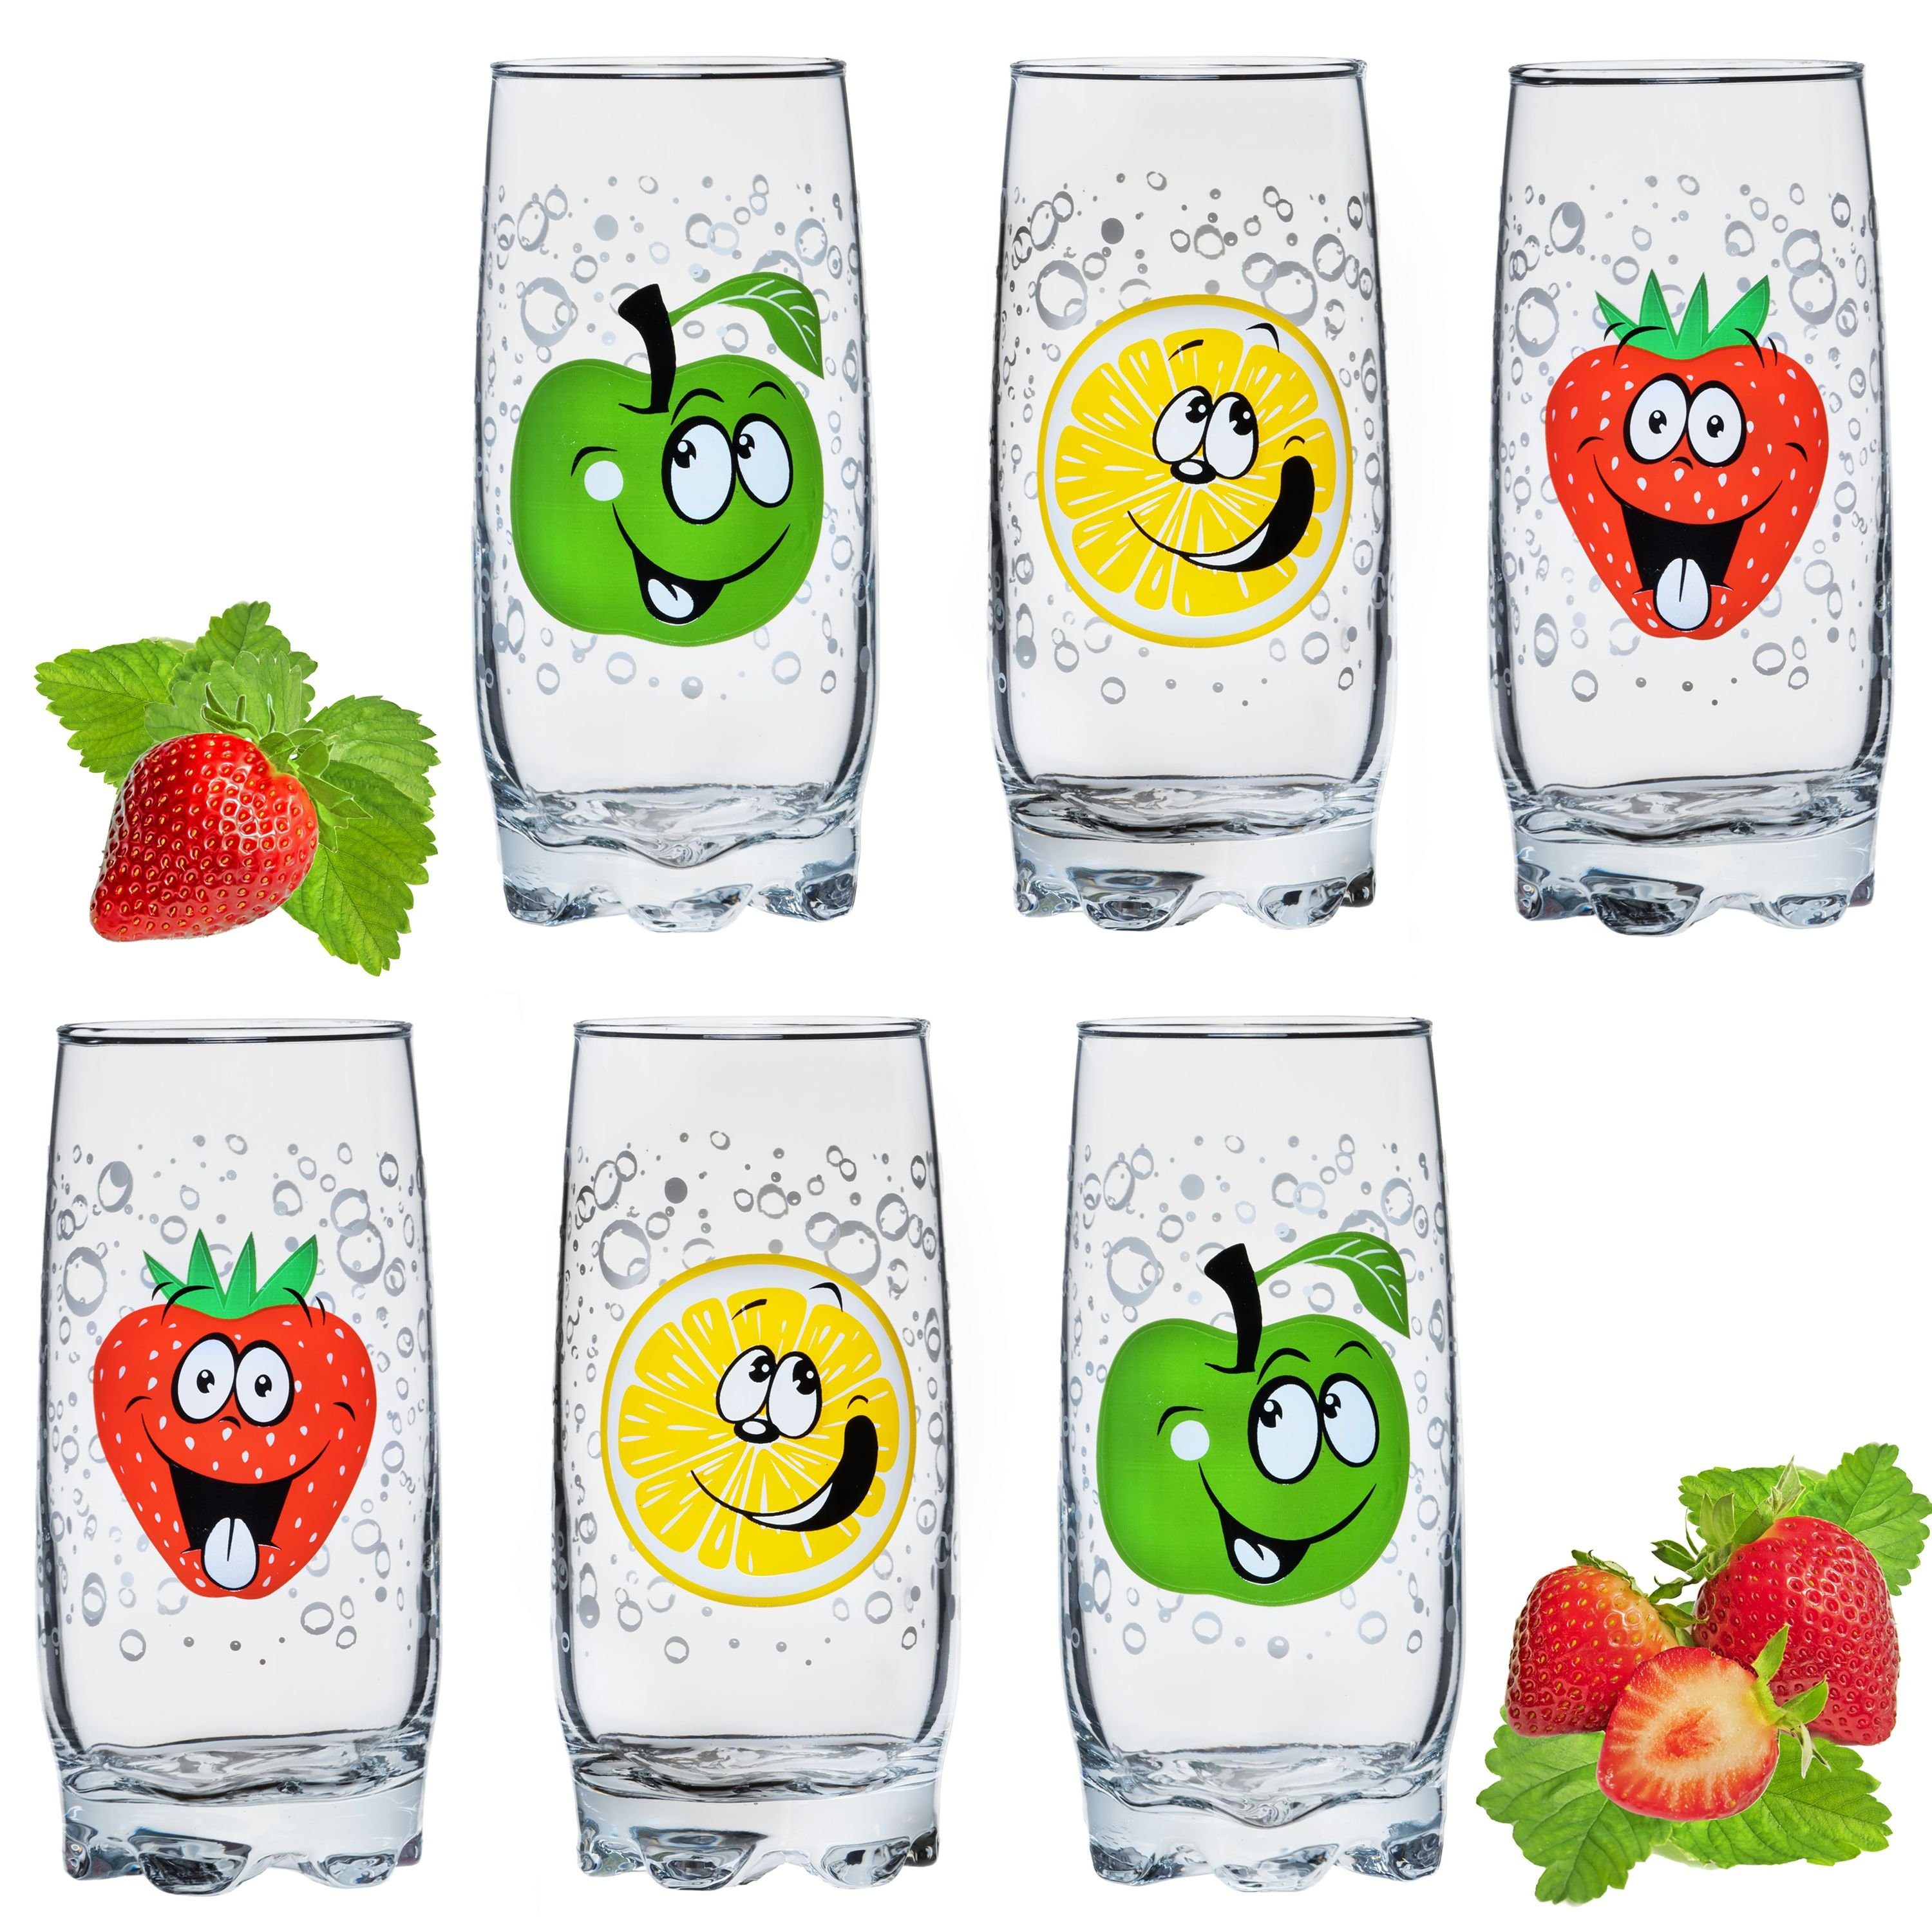 PLATINUX Glas Weiße hohe Glas Glas, Fruchtgesichtern 350ml Teilig lustigen mit aus Set 6 Trinkgläser